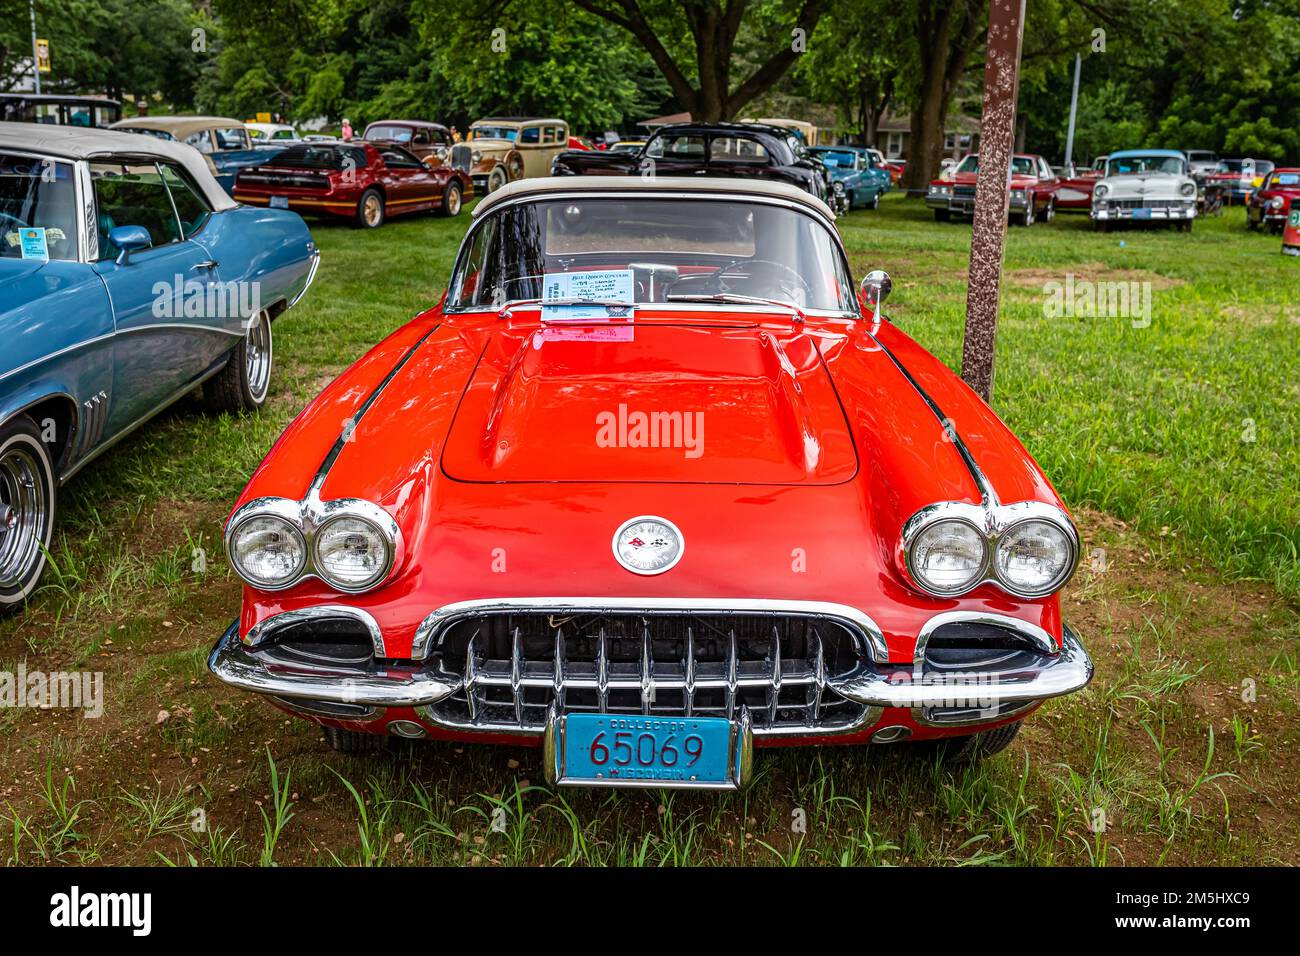 Iola, WI - 07 juillet 2022 : vue de face d'une Corvette cabriolet 1959 de Chevrolet lors d'un salon automobile local. Banque D'Images